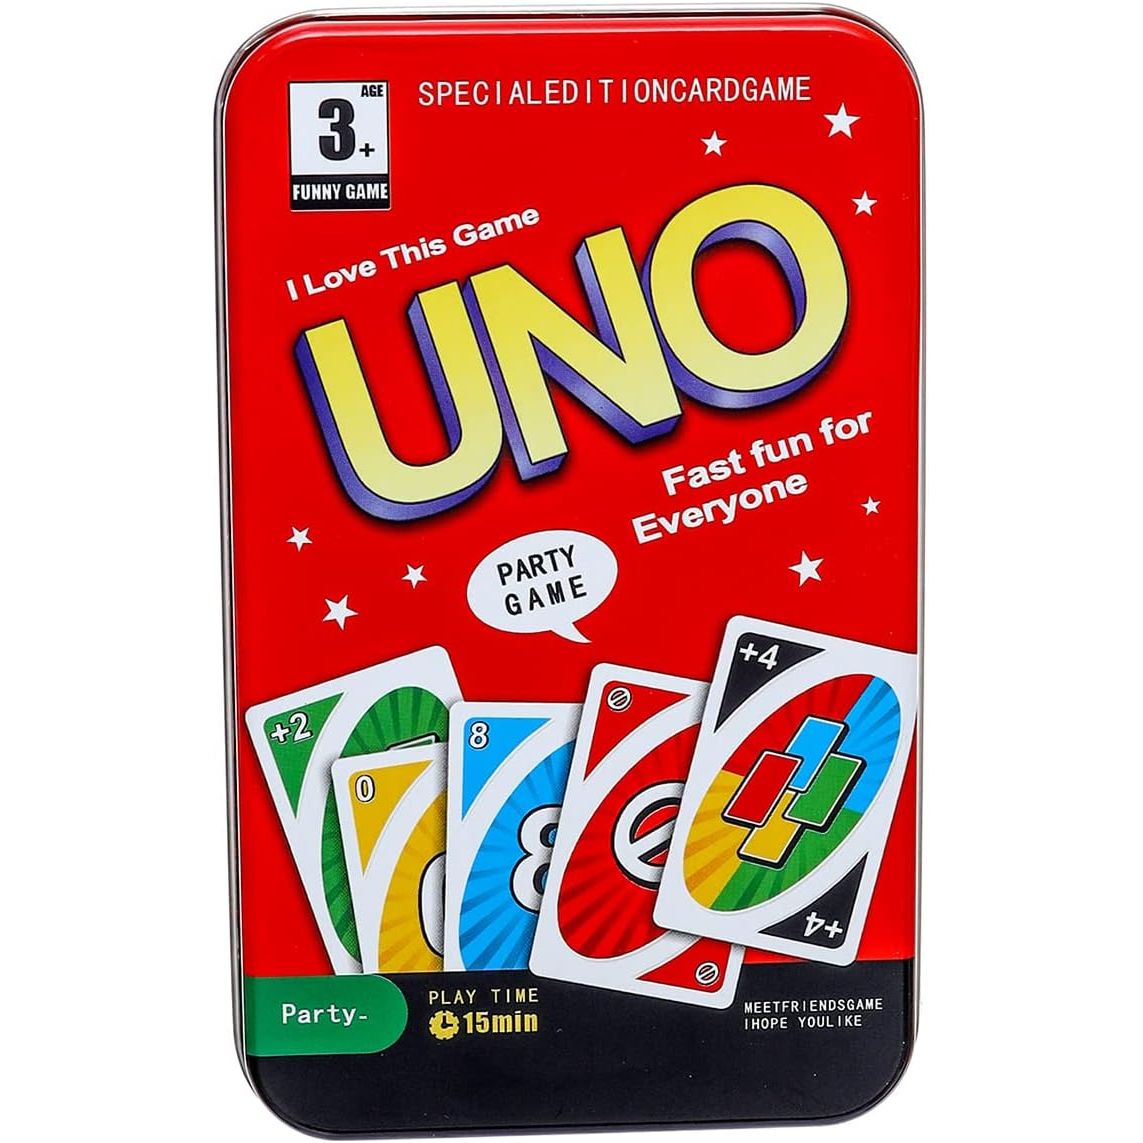 بطاقات لعب أونو ريد إديشن من 2 إلى 10 لاعبين، أفضل لعبة عائلية تتضمن 108 ورق لعب - متعددة الألوان